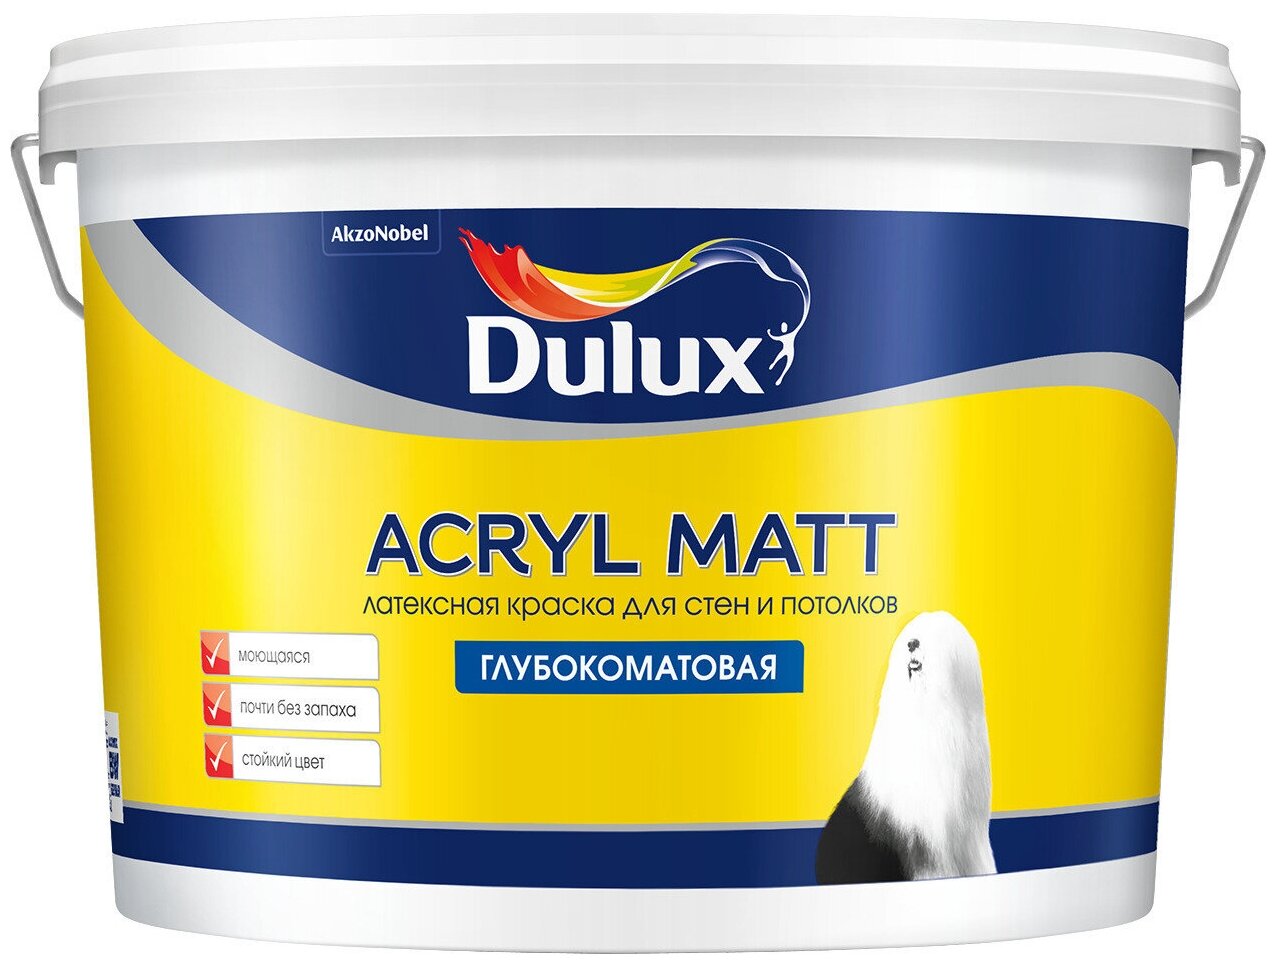 Dulux Acryl Matt 9л, , 50GG 40/064 мат